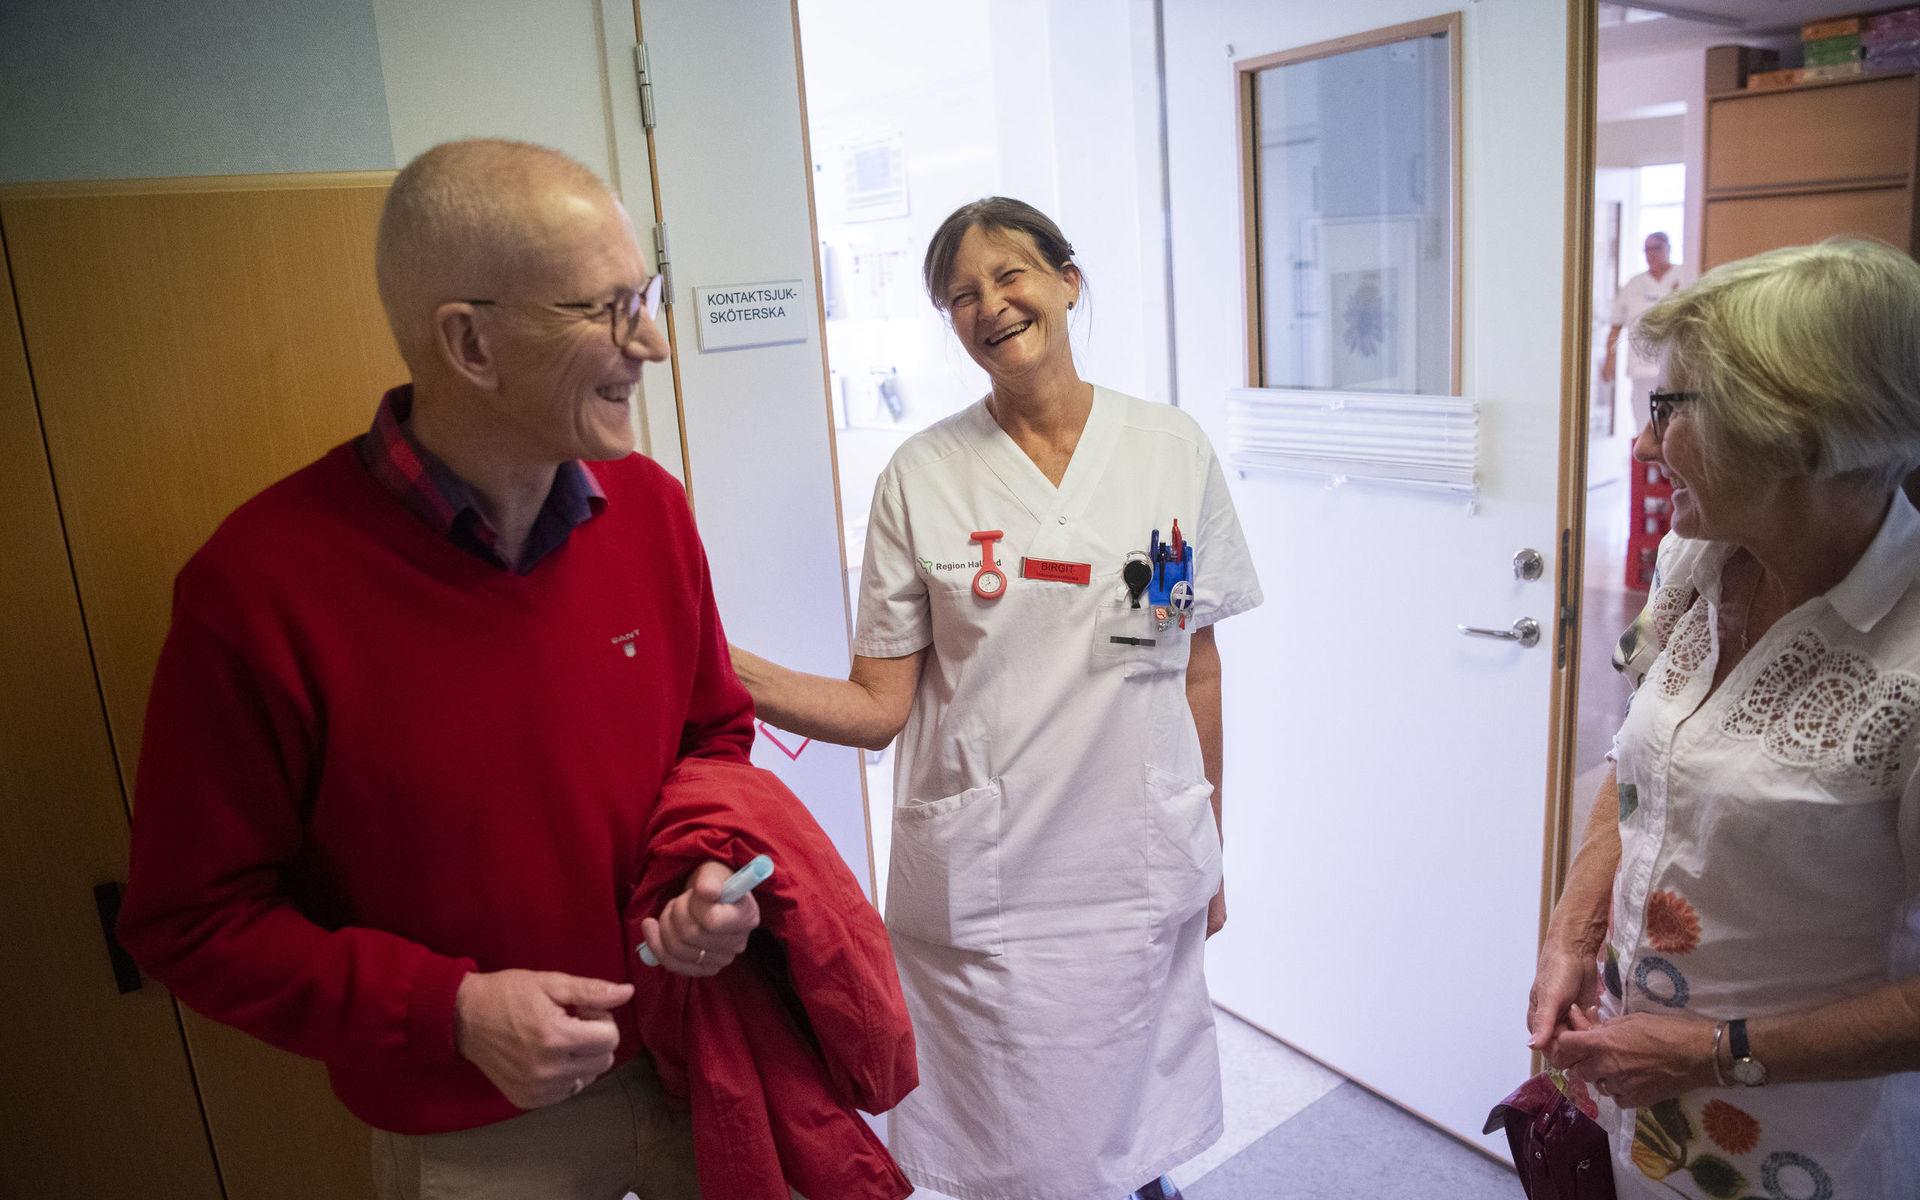 ”Vården är helt fantastisk, vi möter så många duktiga människor som visar oss så mycket omtanke.” Här med Birgit Davidsson, onkologsjuksköterska. 